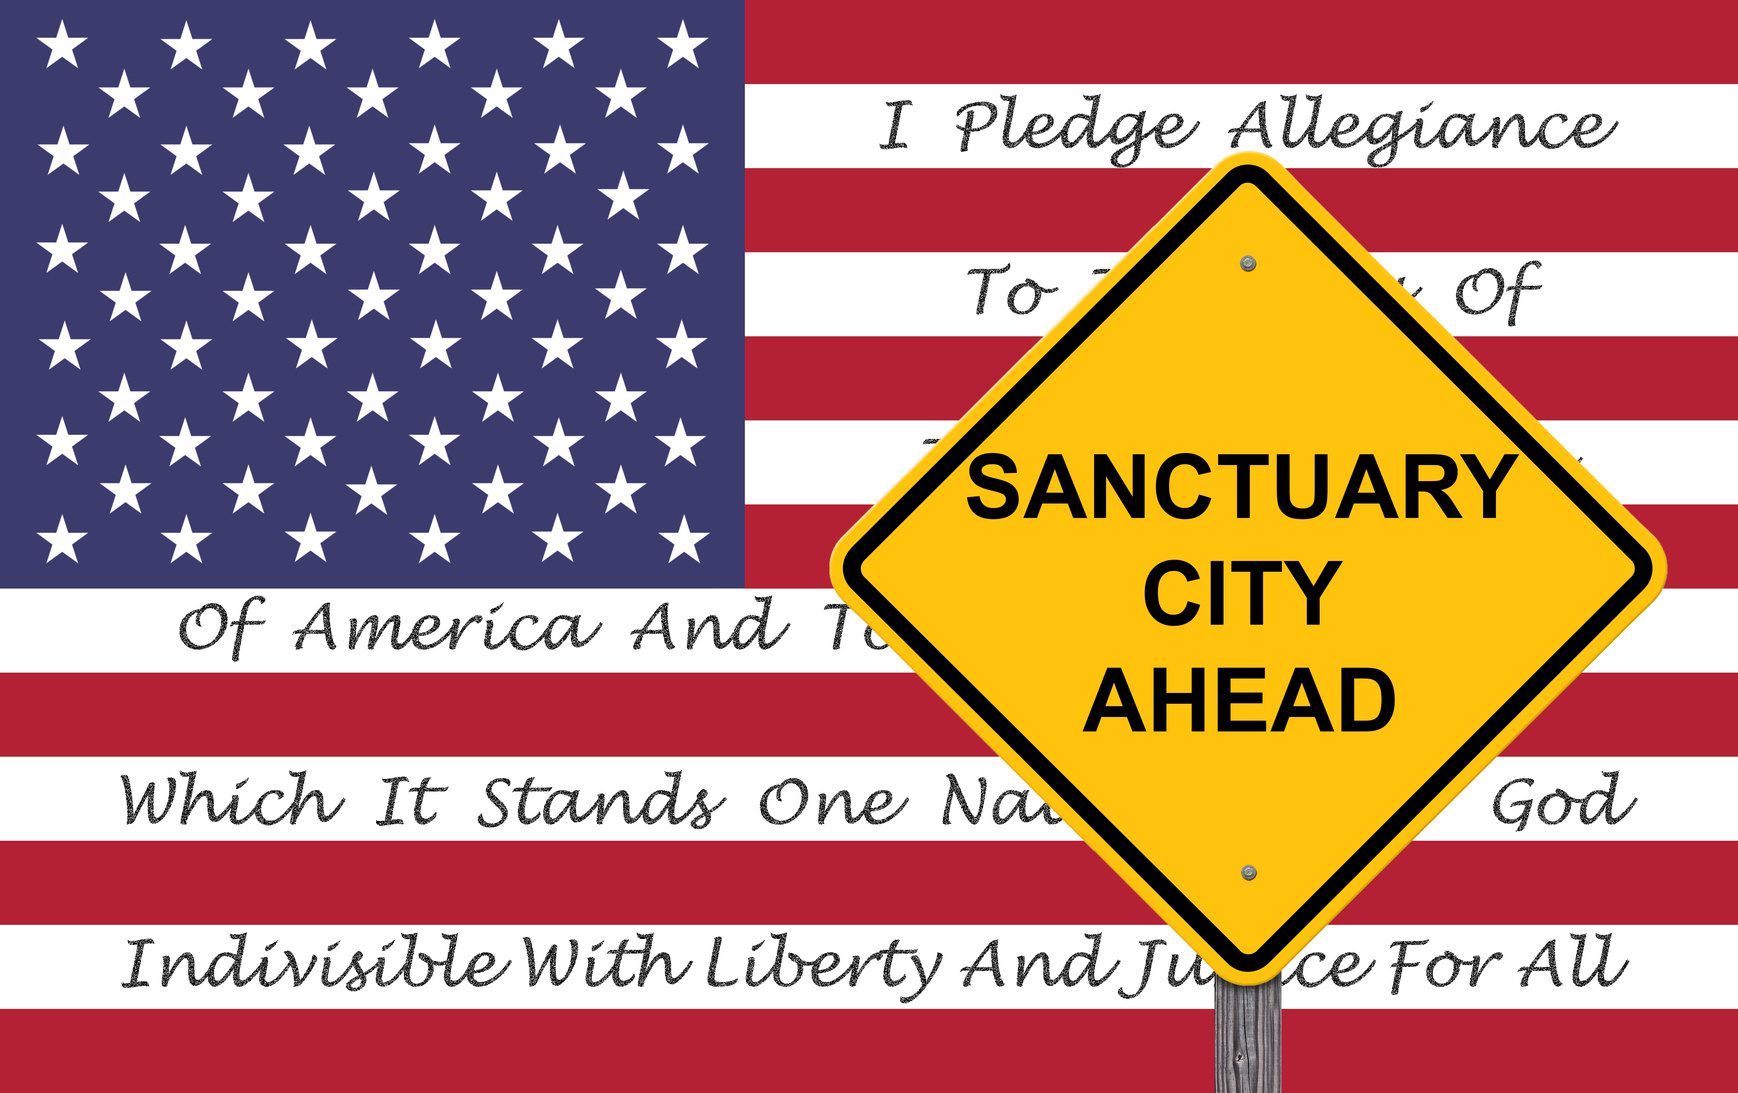 Senate Rejects “Sanctuary Cities” Legislation